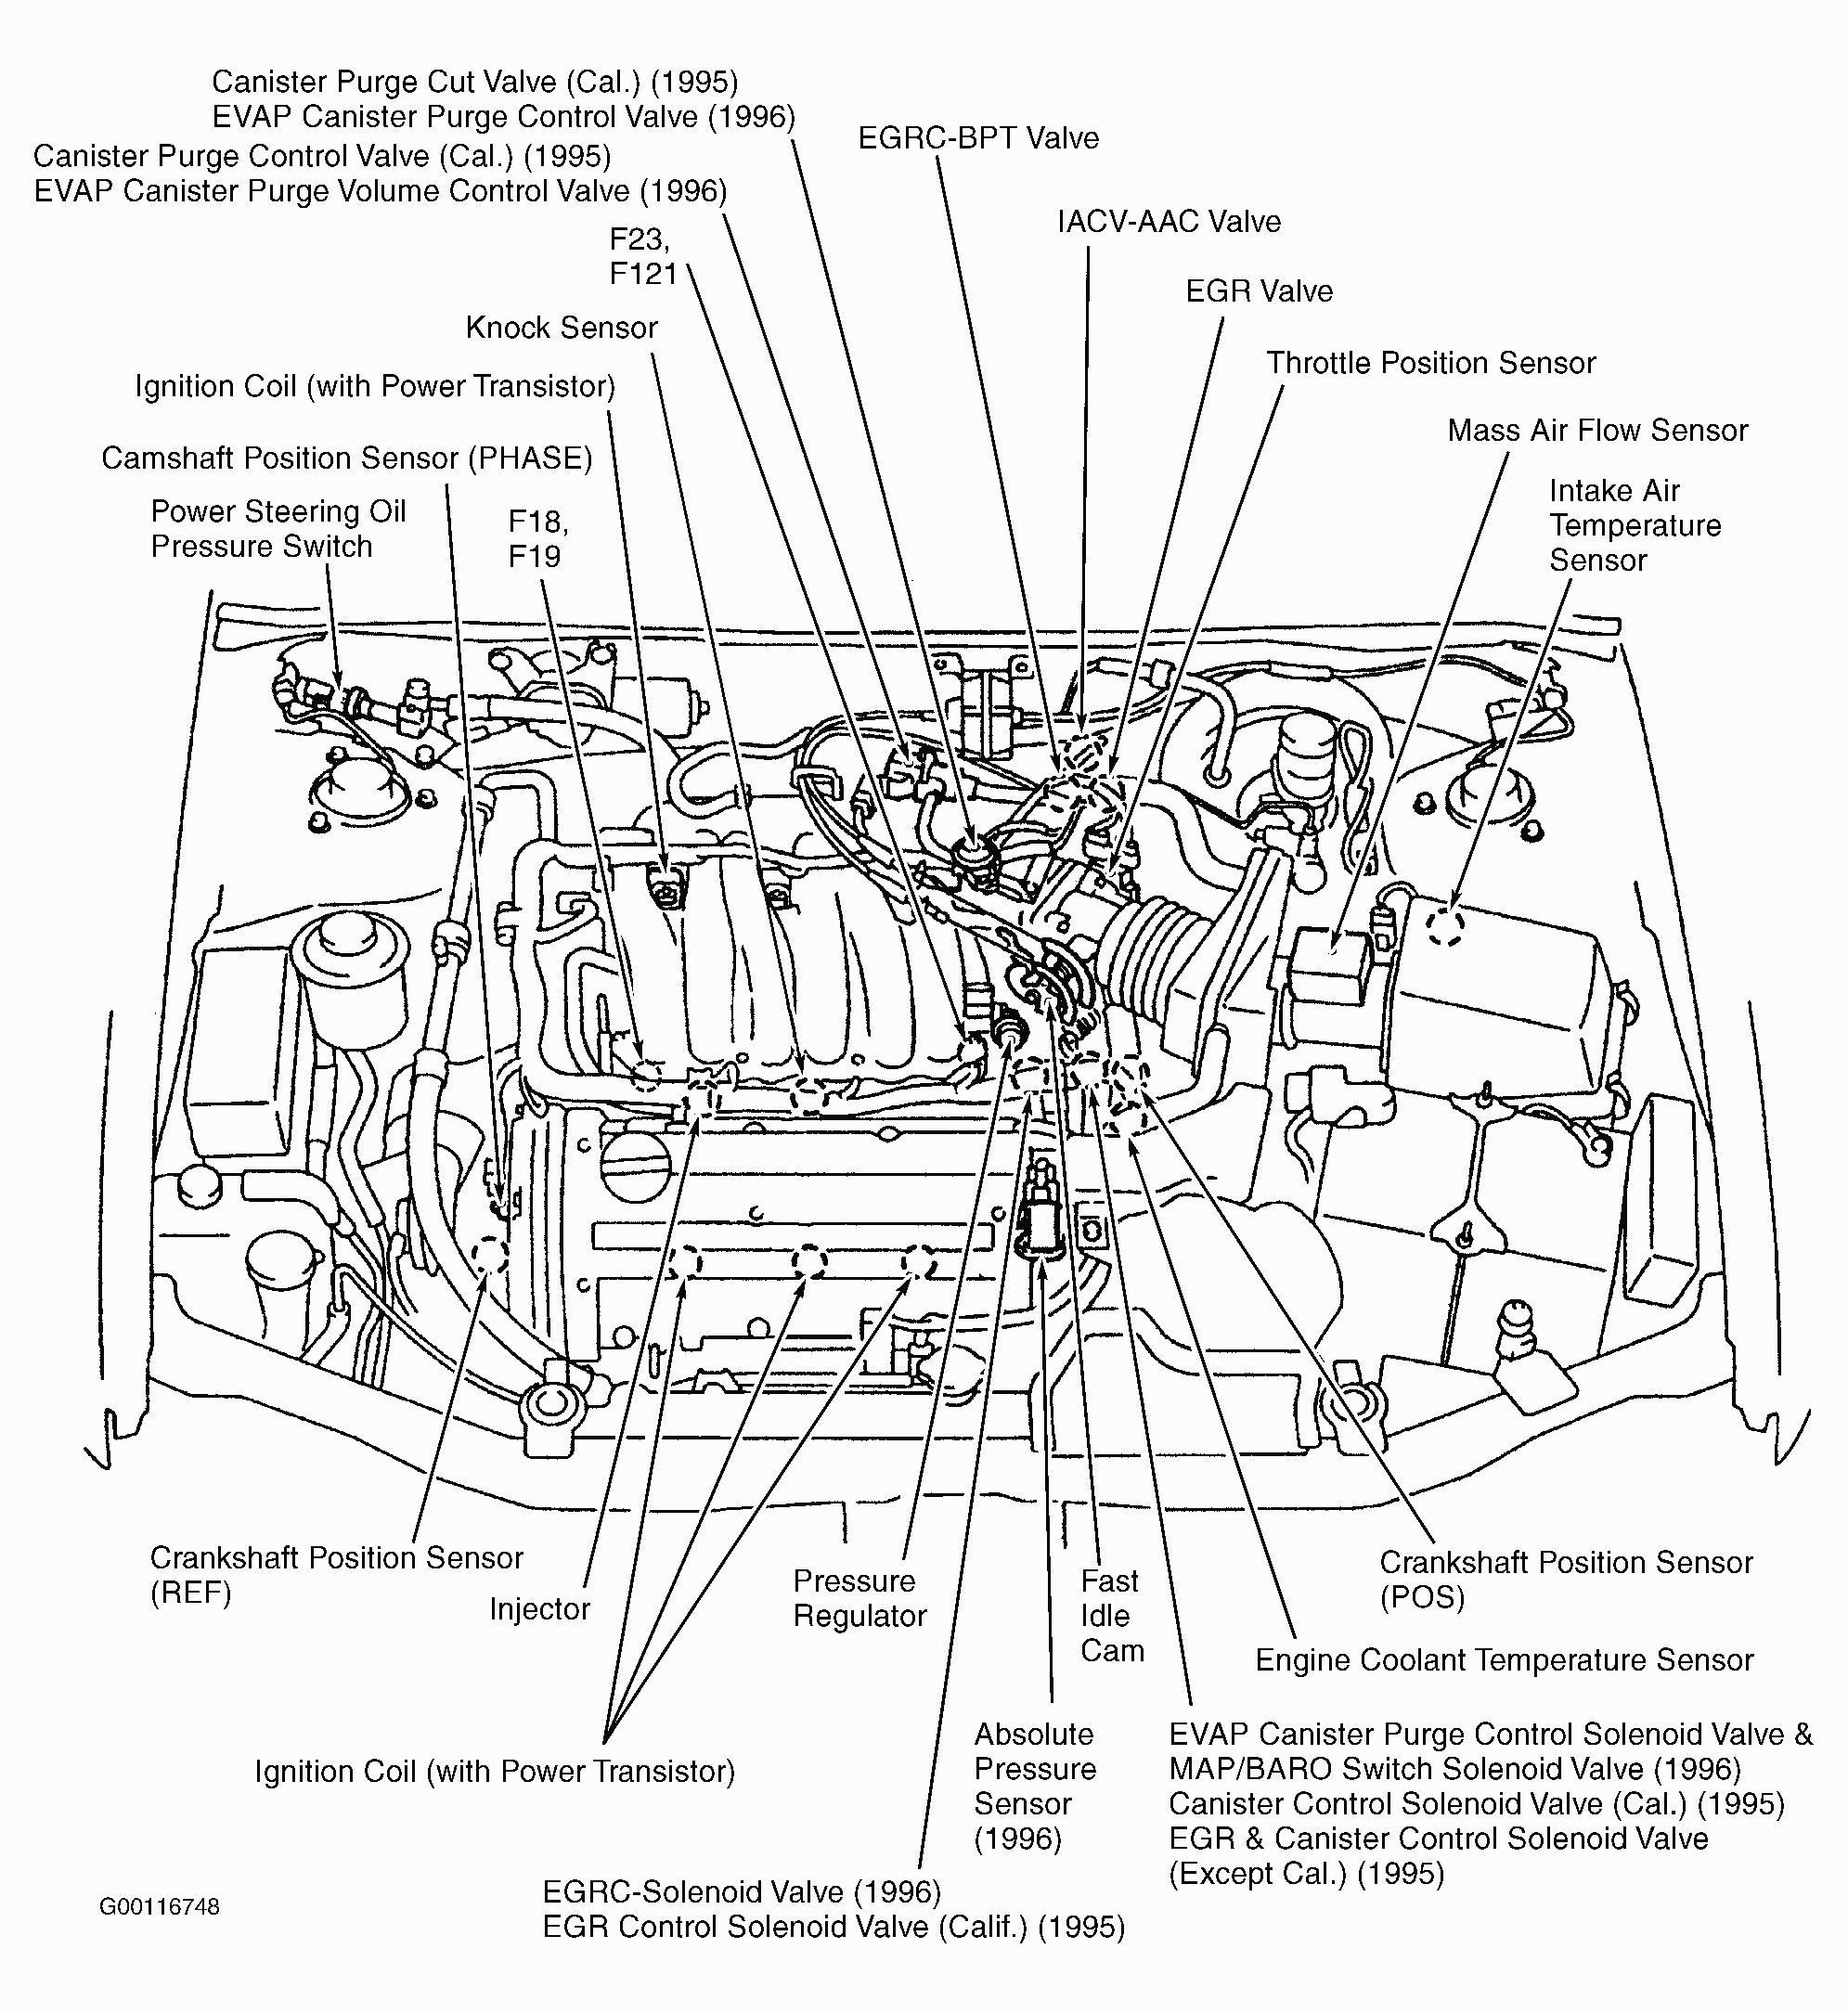 2004 Vw Jetta Engine Diagram 96 Jetta Engine Diagram Of 2004 Vw Jetta Engine Diagram